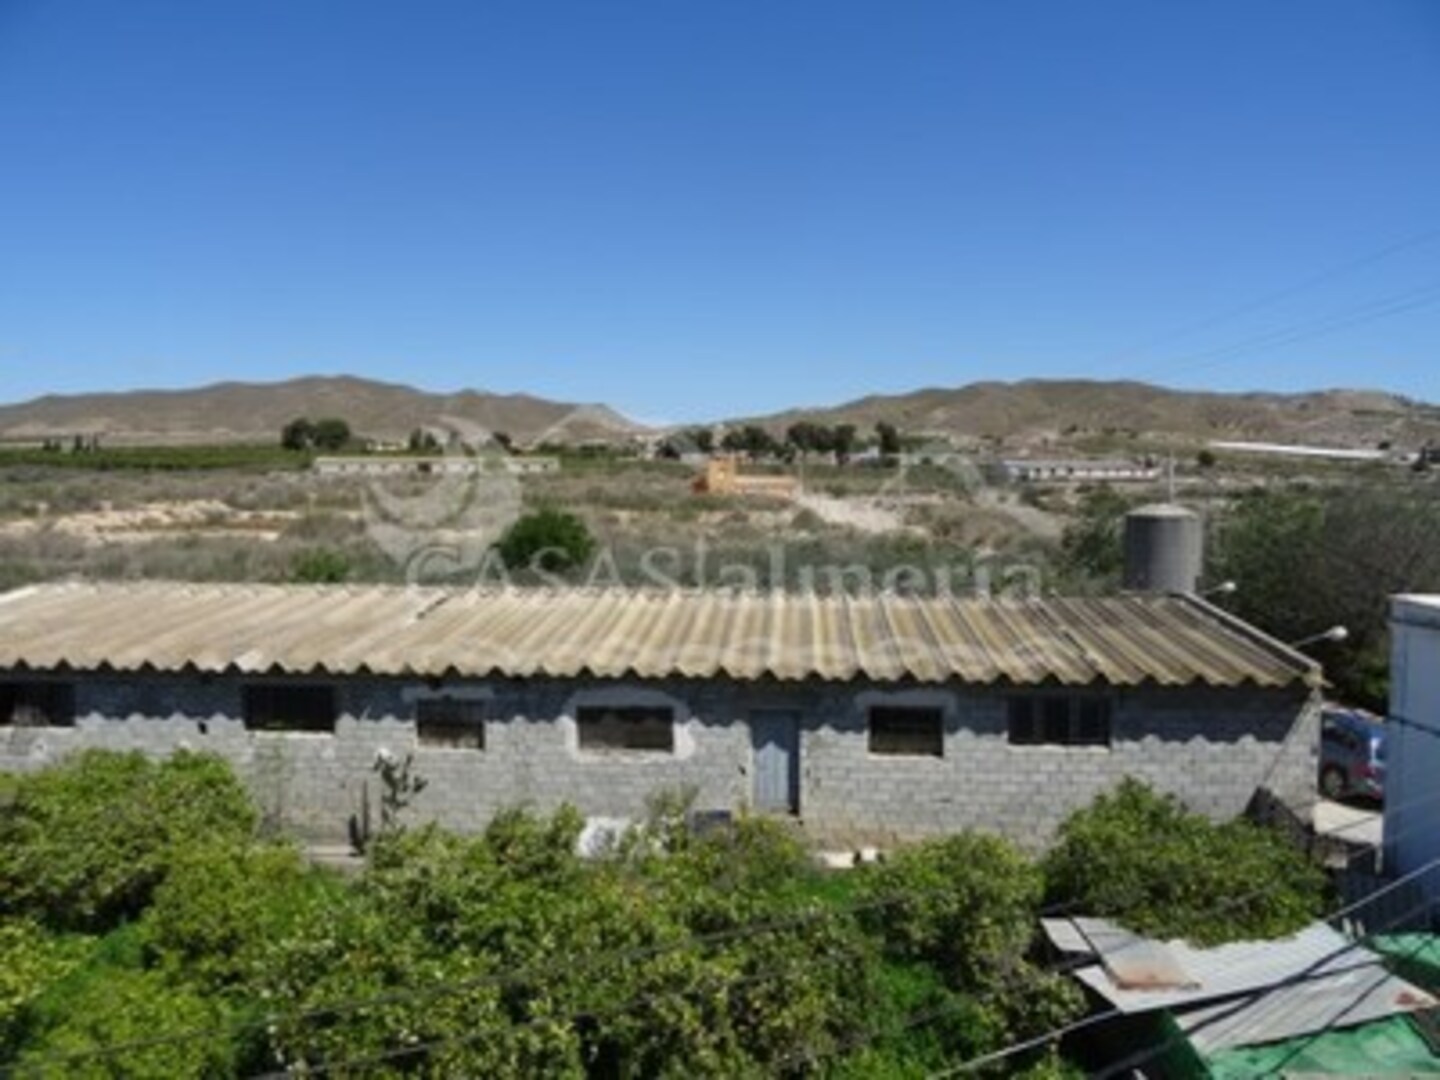 R02035: Casa Adosada en venta en Huercal-Overa, Almería